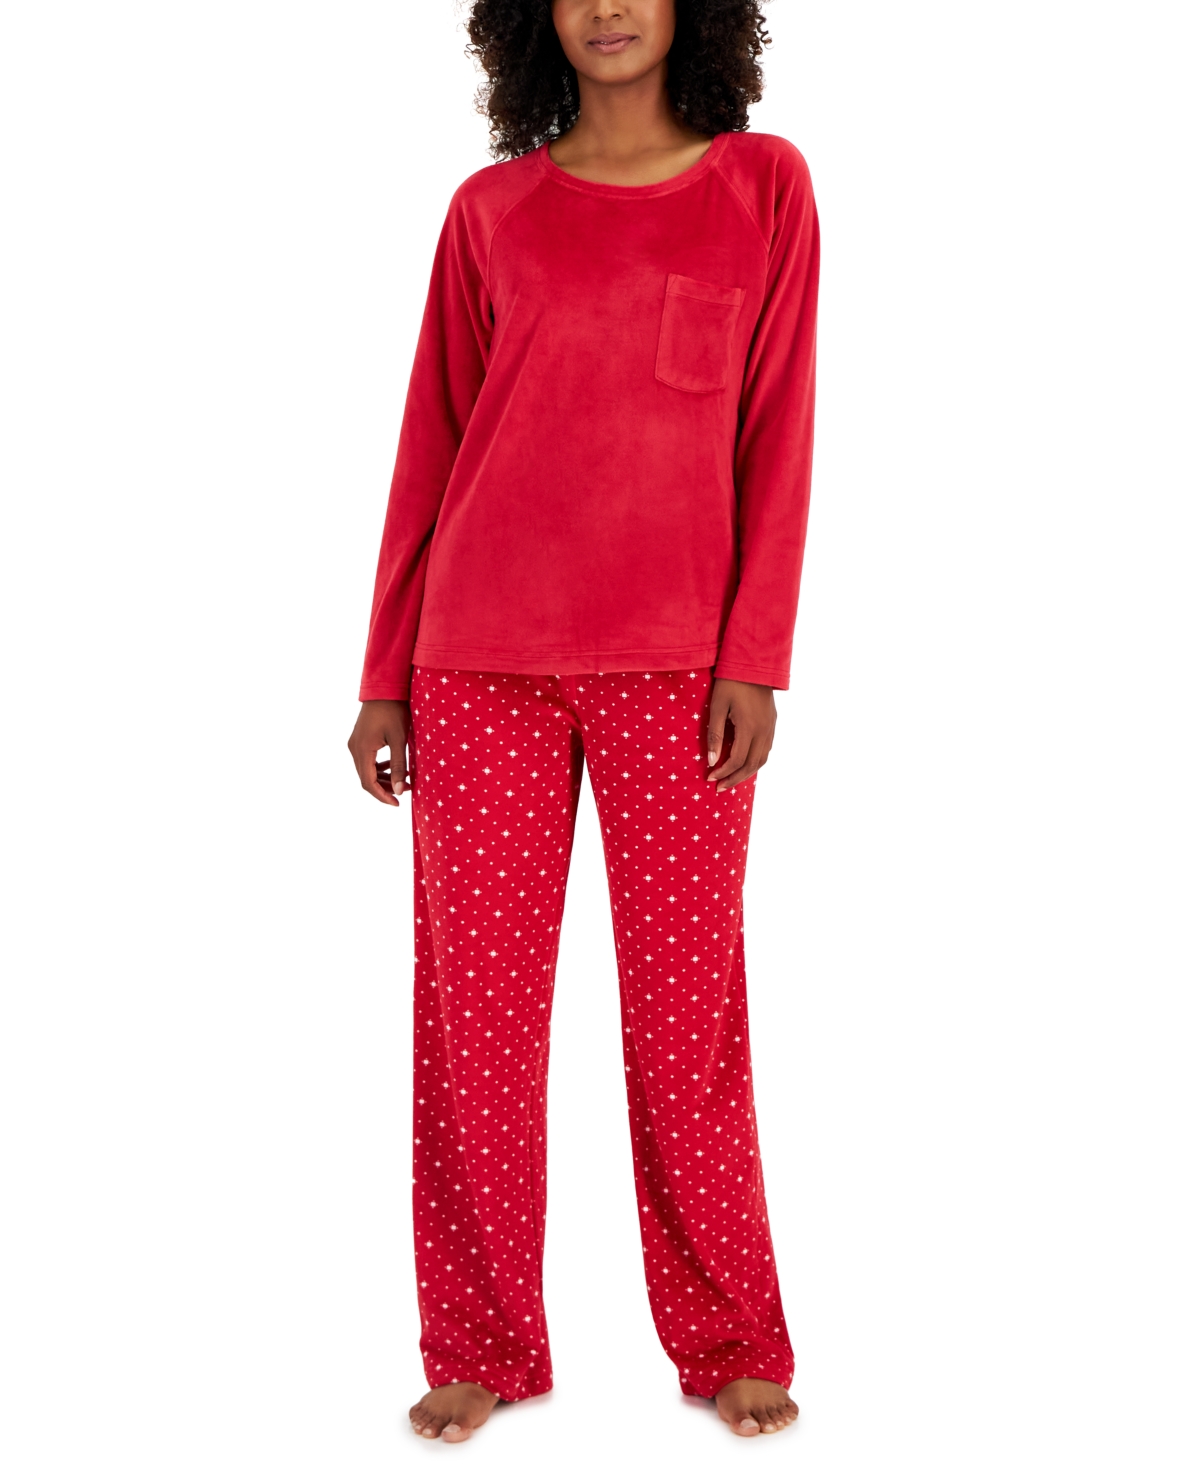 Macy's Women's Pajamas